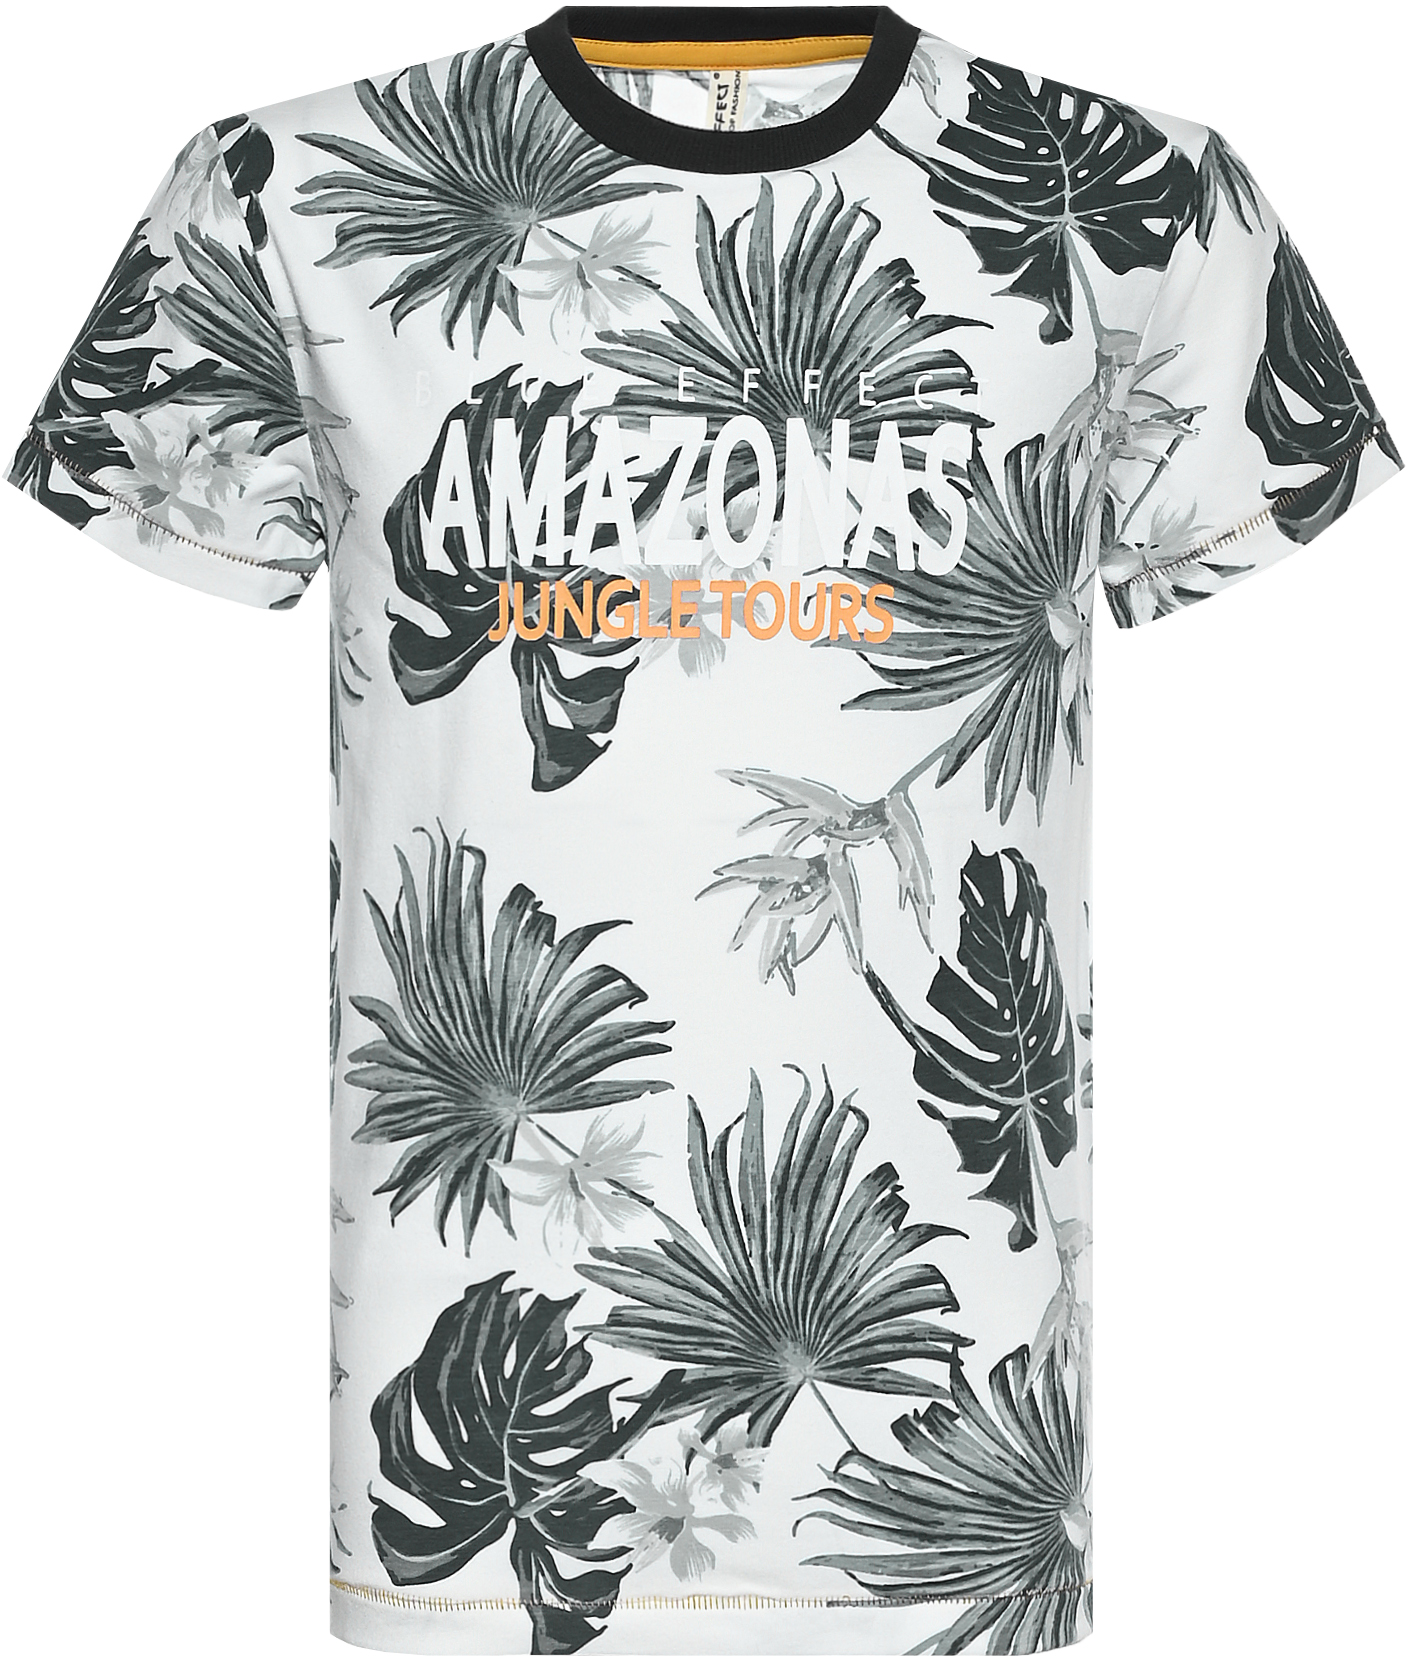 6115-Boys T-Shirt -Amazonastrip